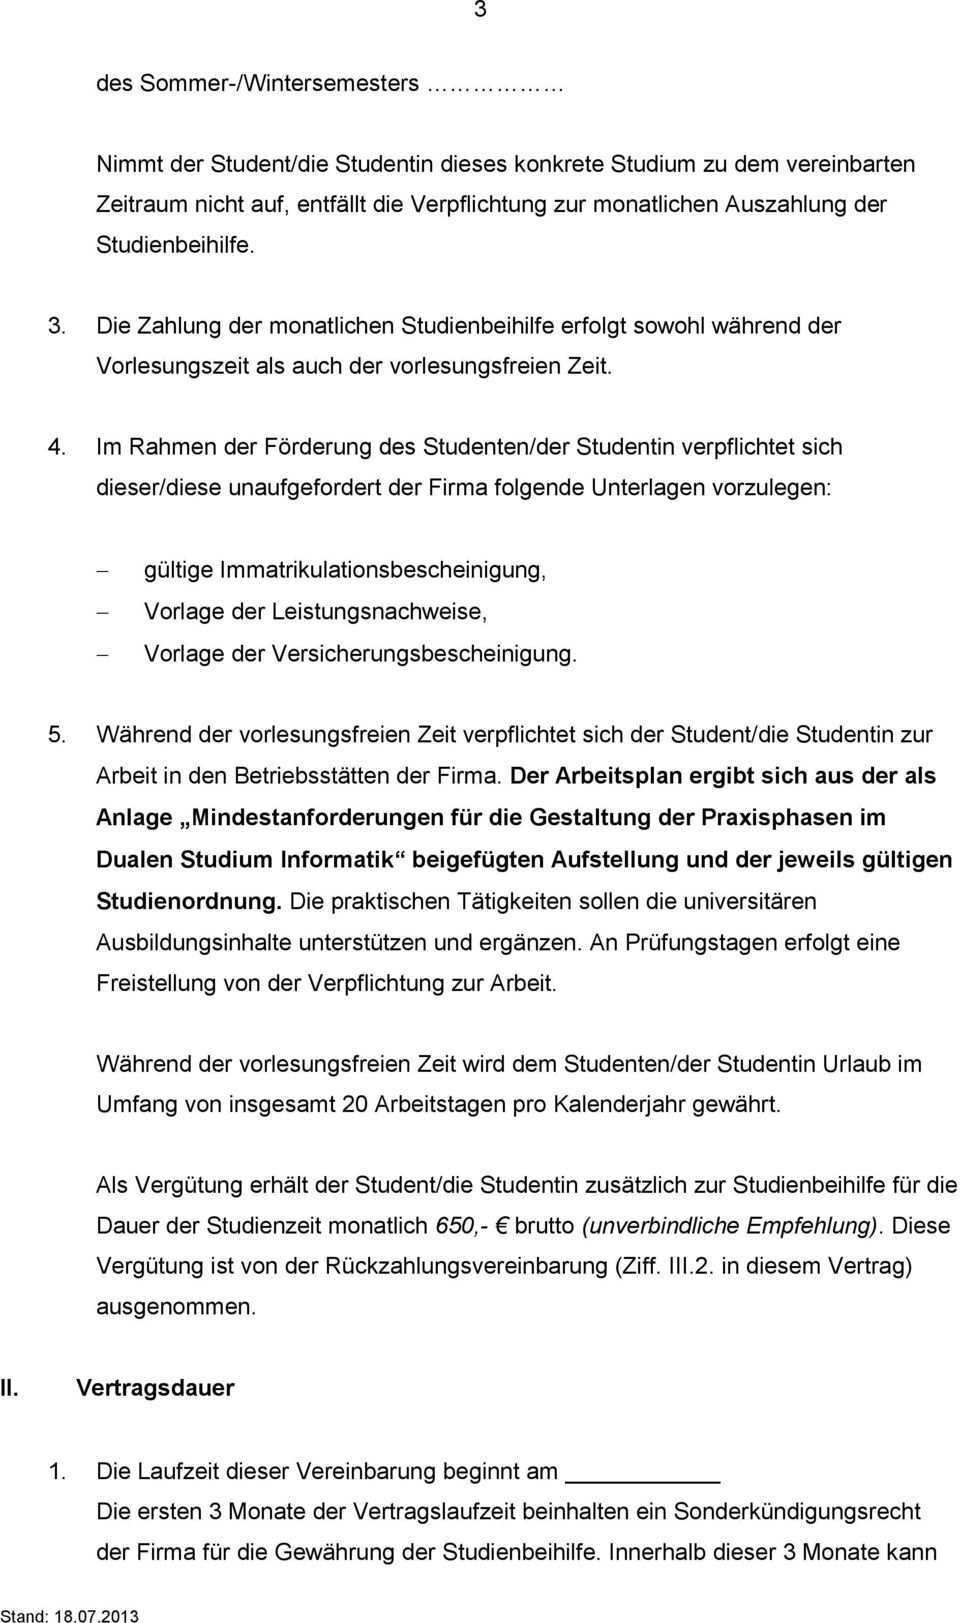 Allgemeine Hinweise Zum Mustervertrag Fur Das Duale Studium An Der Universitat Siegen Pdf Kostenfreier Download